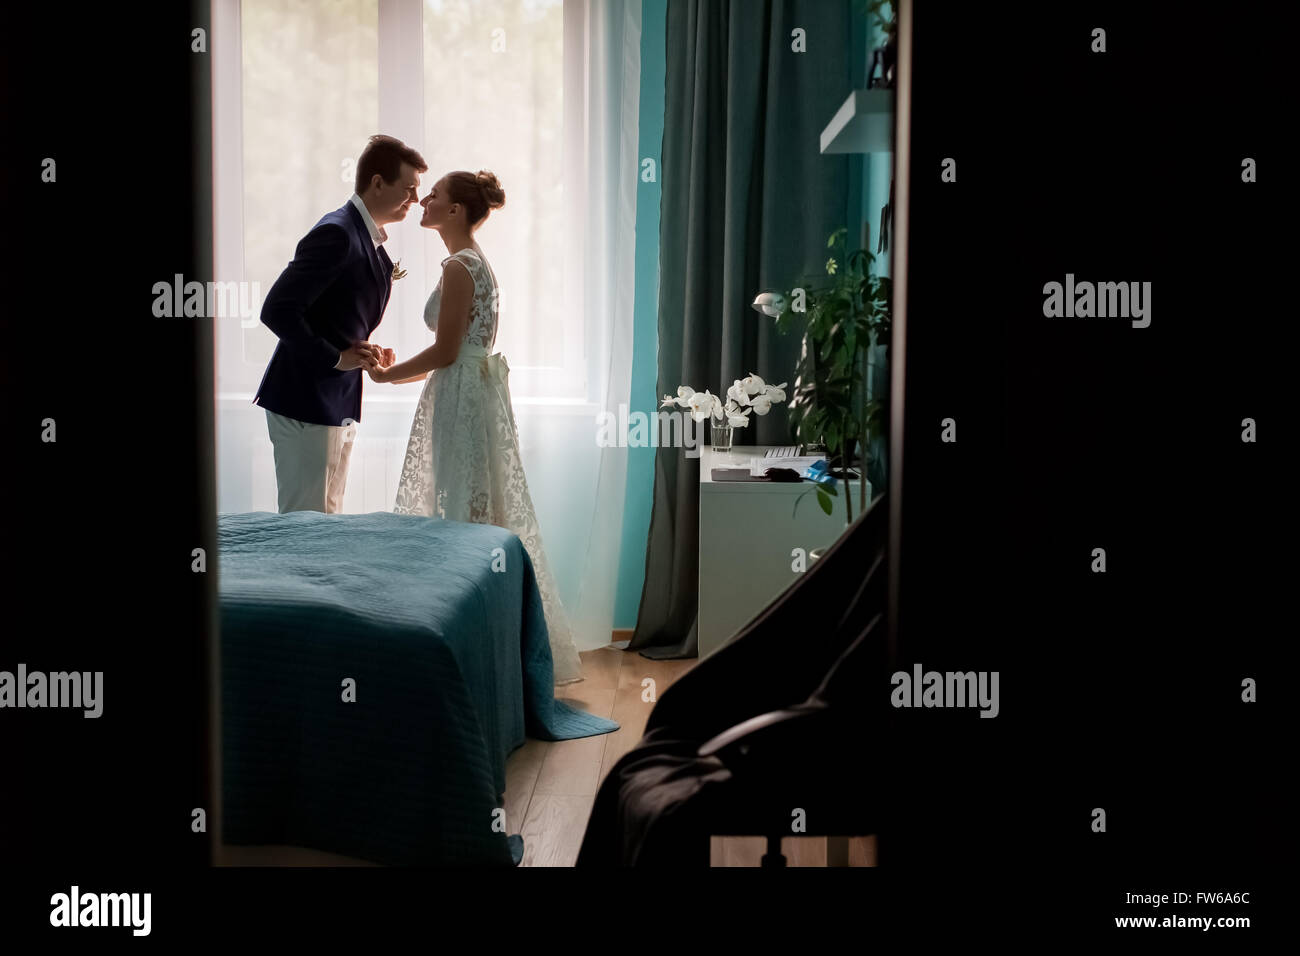 Foto piena di sagoma scura della coppia di sposi novelli sposi kissing nella finestra Interno camere da letto su sfondo al coperto, Foto Stock